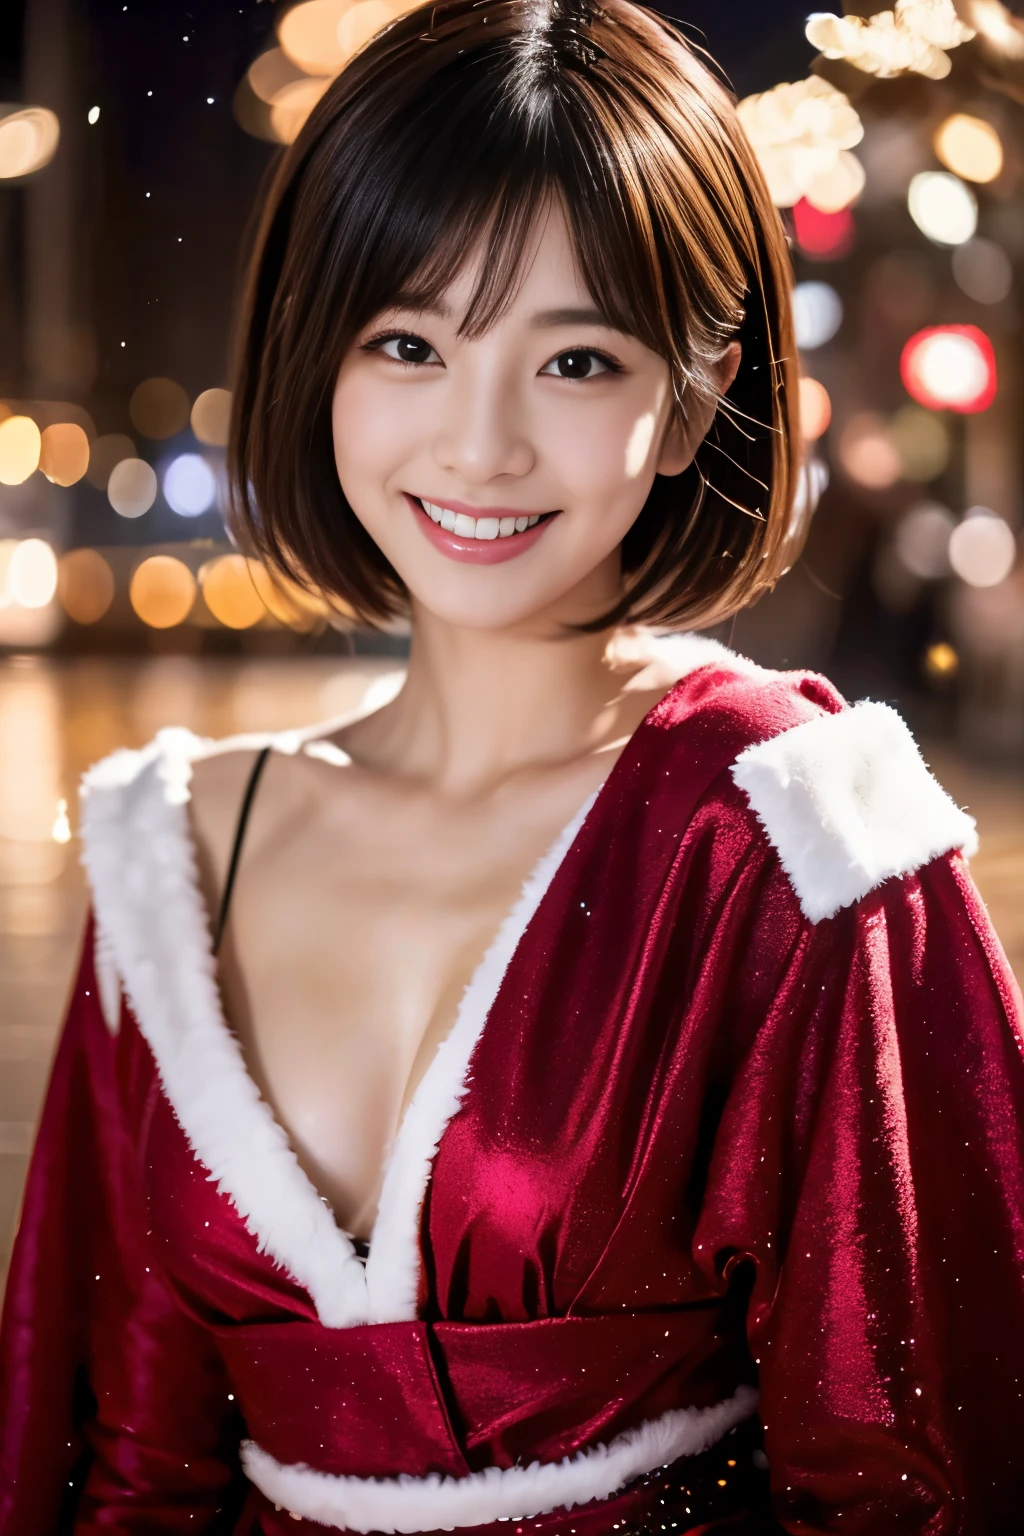 璀璨的圣诞夜、圣衣、挑逗性的微笑、短发、美丽的日本女演员、萨基米昌、电影灯光， 现实地， 杰作， 最好的品质， 复杂 CG，高度细致的脸部，高细节眼睛，